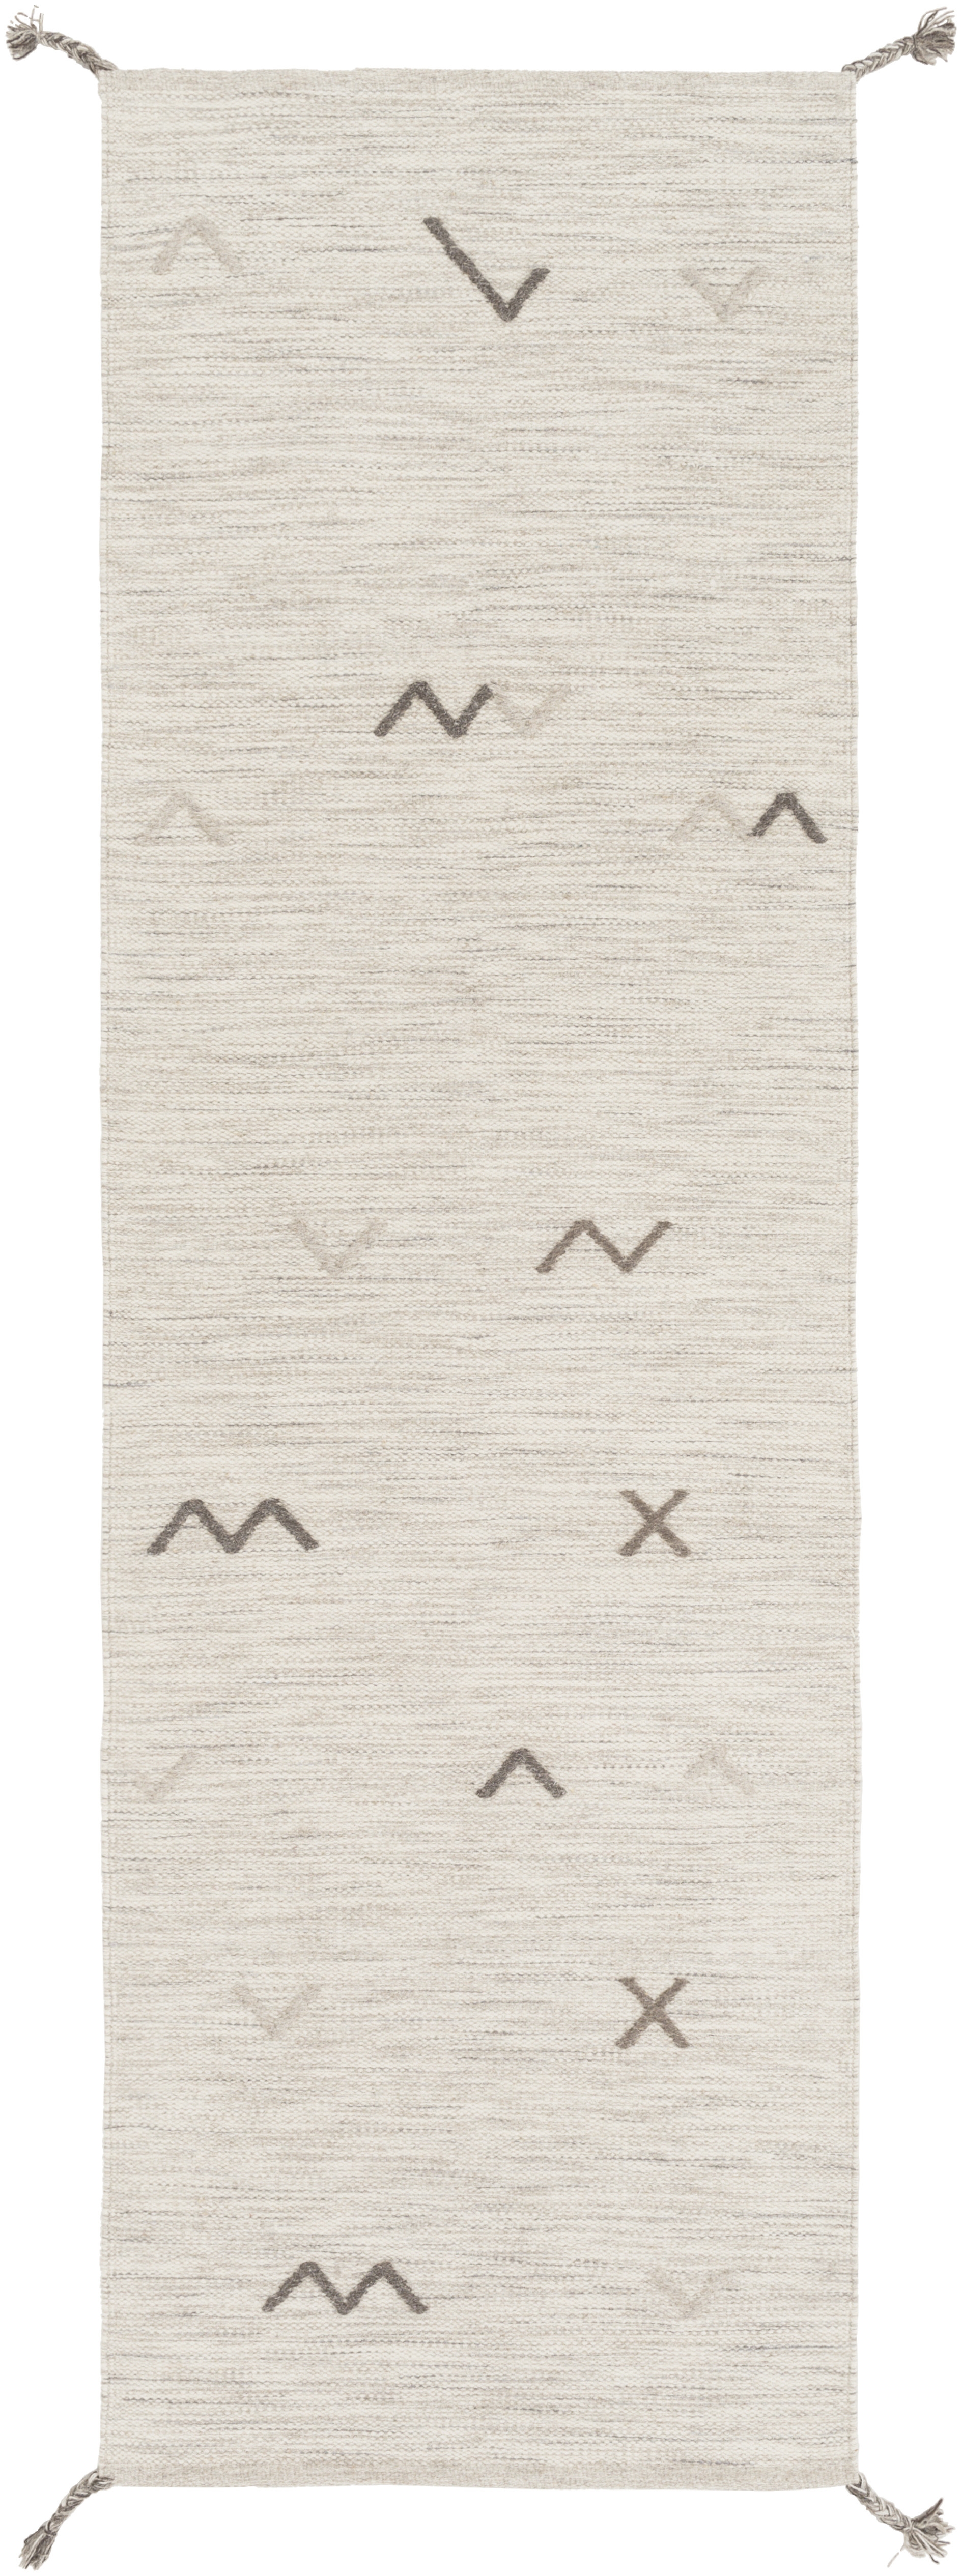 Montezuma Rug, 2'6" x 8' - Image 0